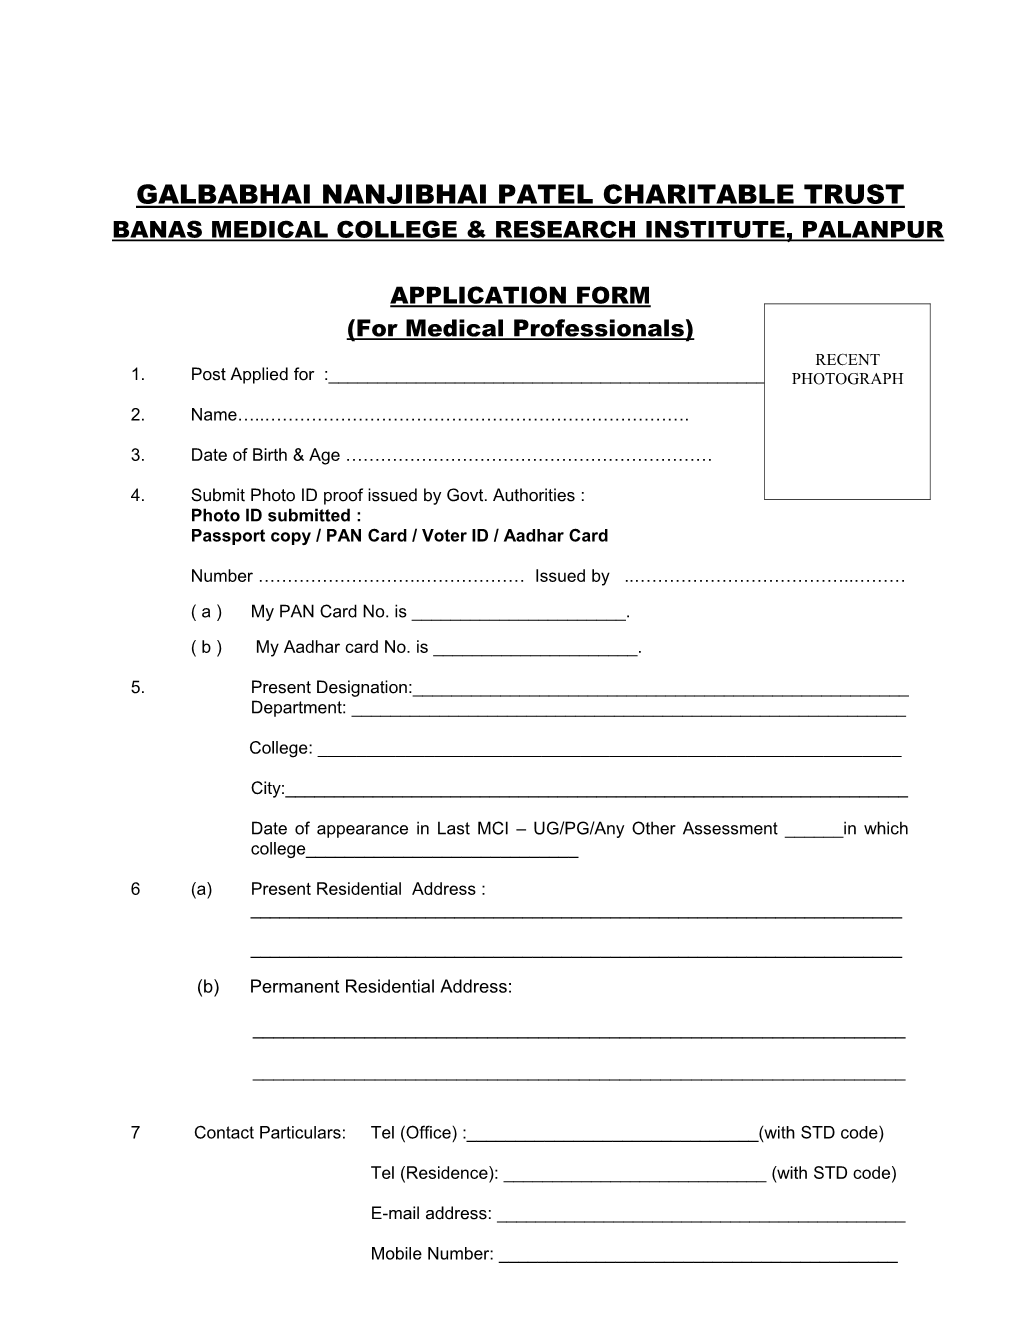 Galbabhai Nanjibhai Patel Charitable Trust